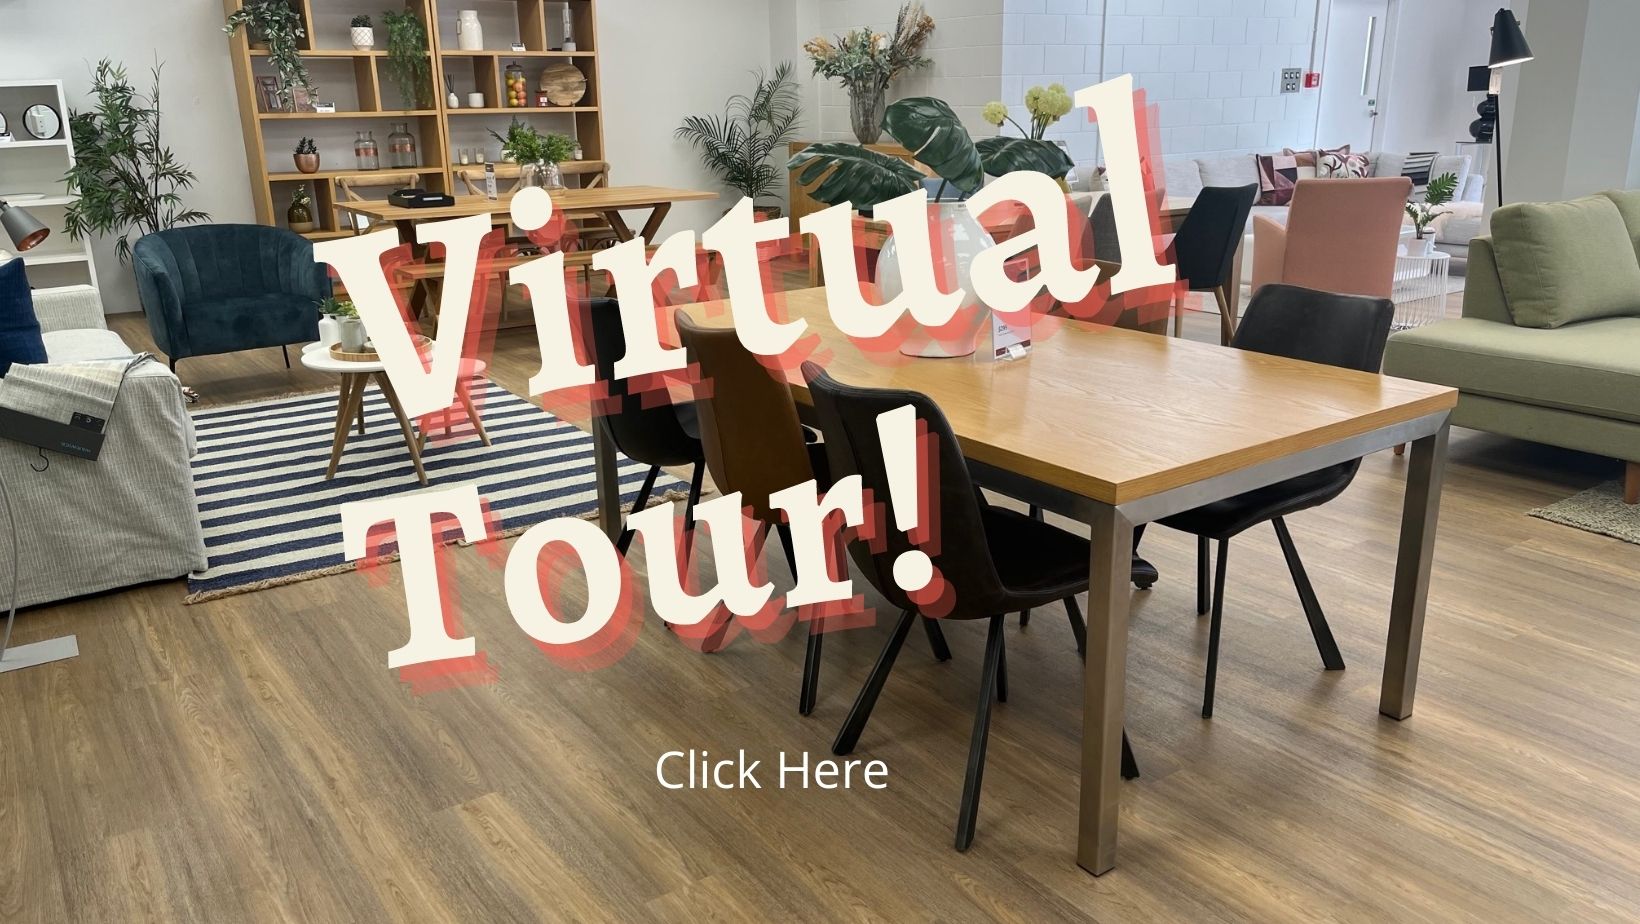 Virtual Tour of Furniture Showroom